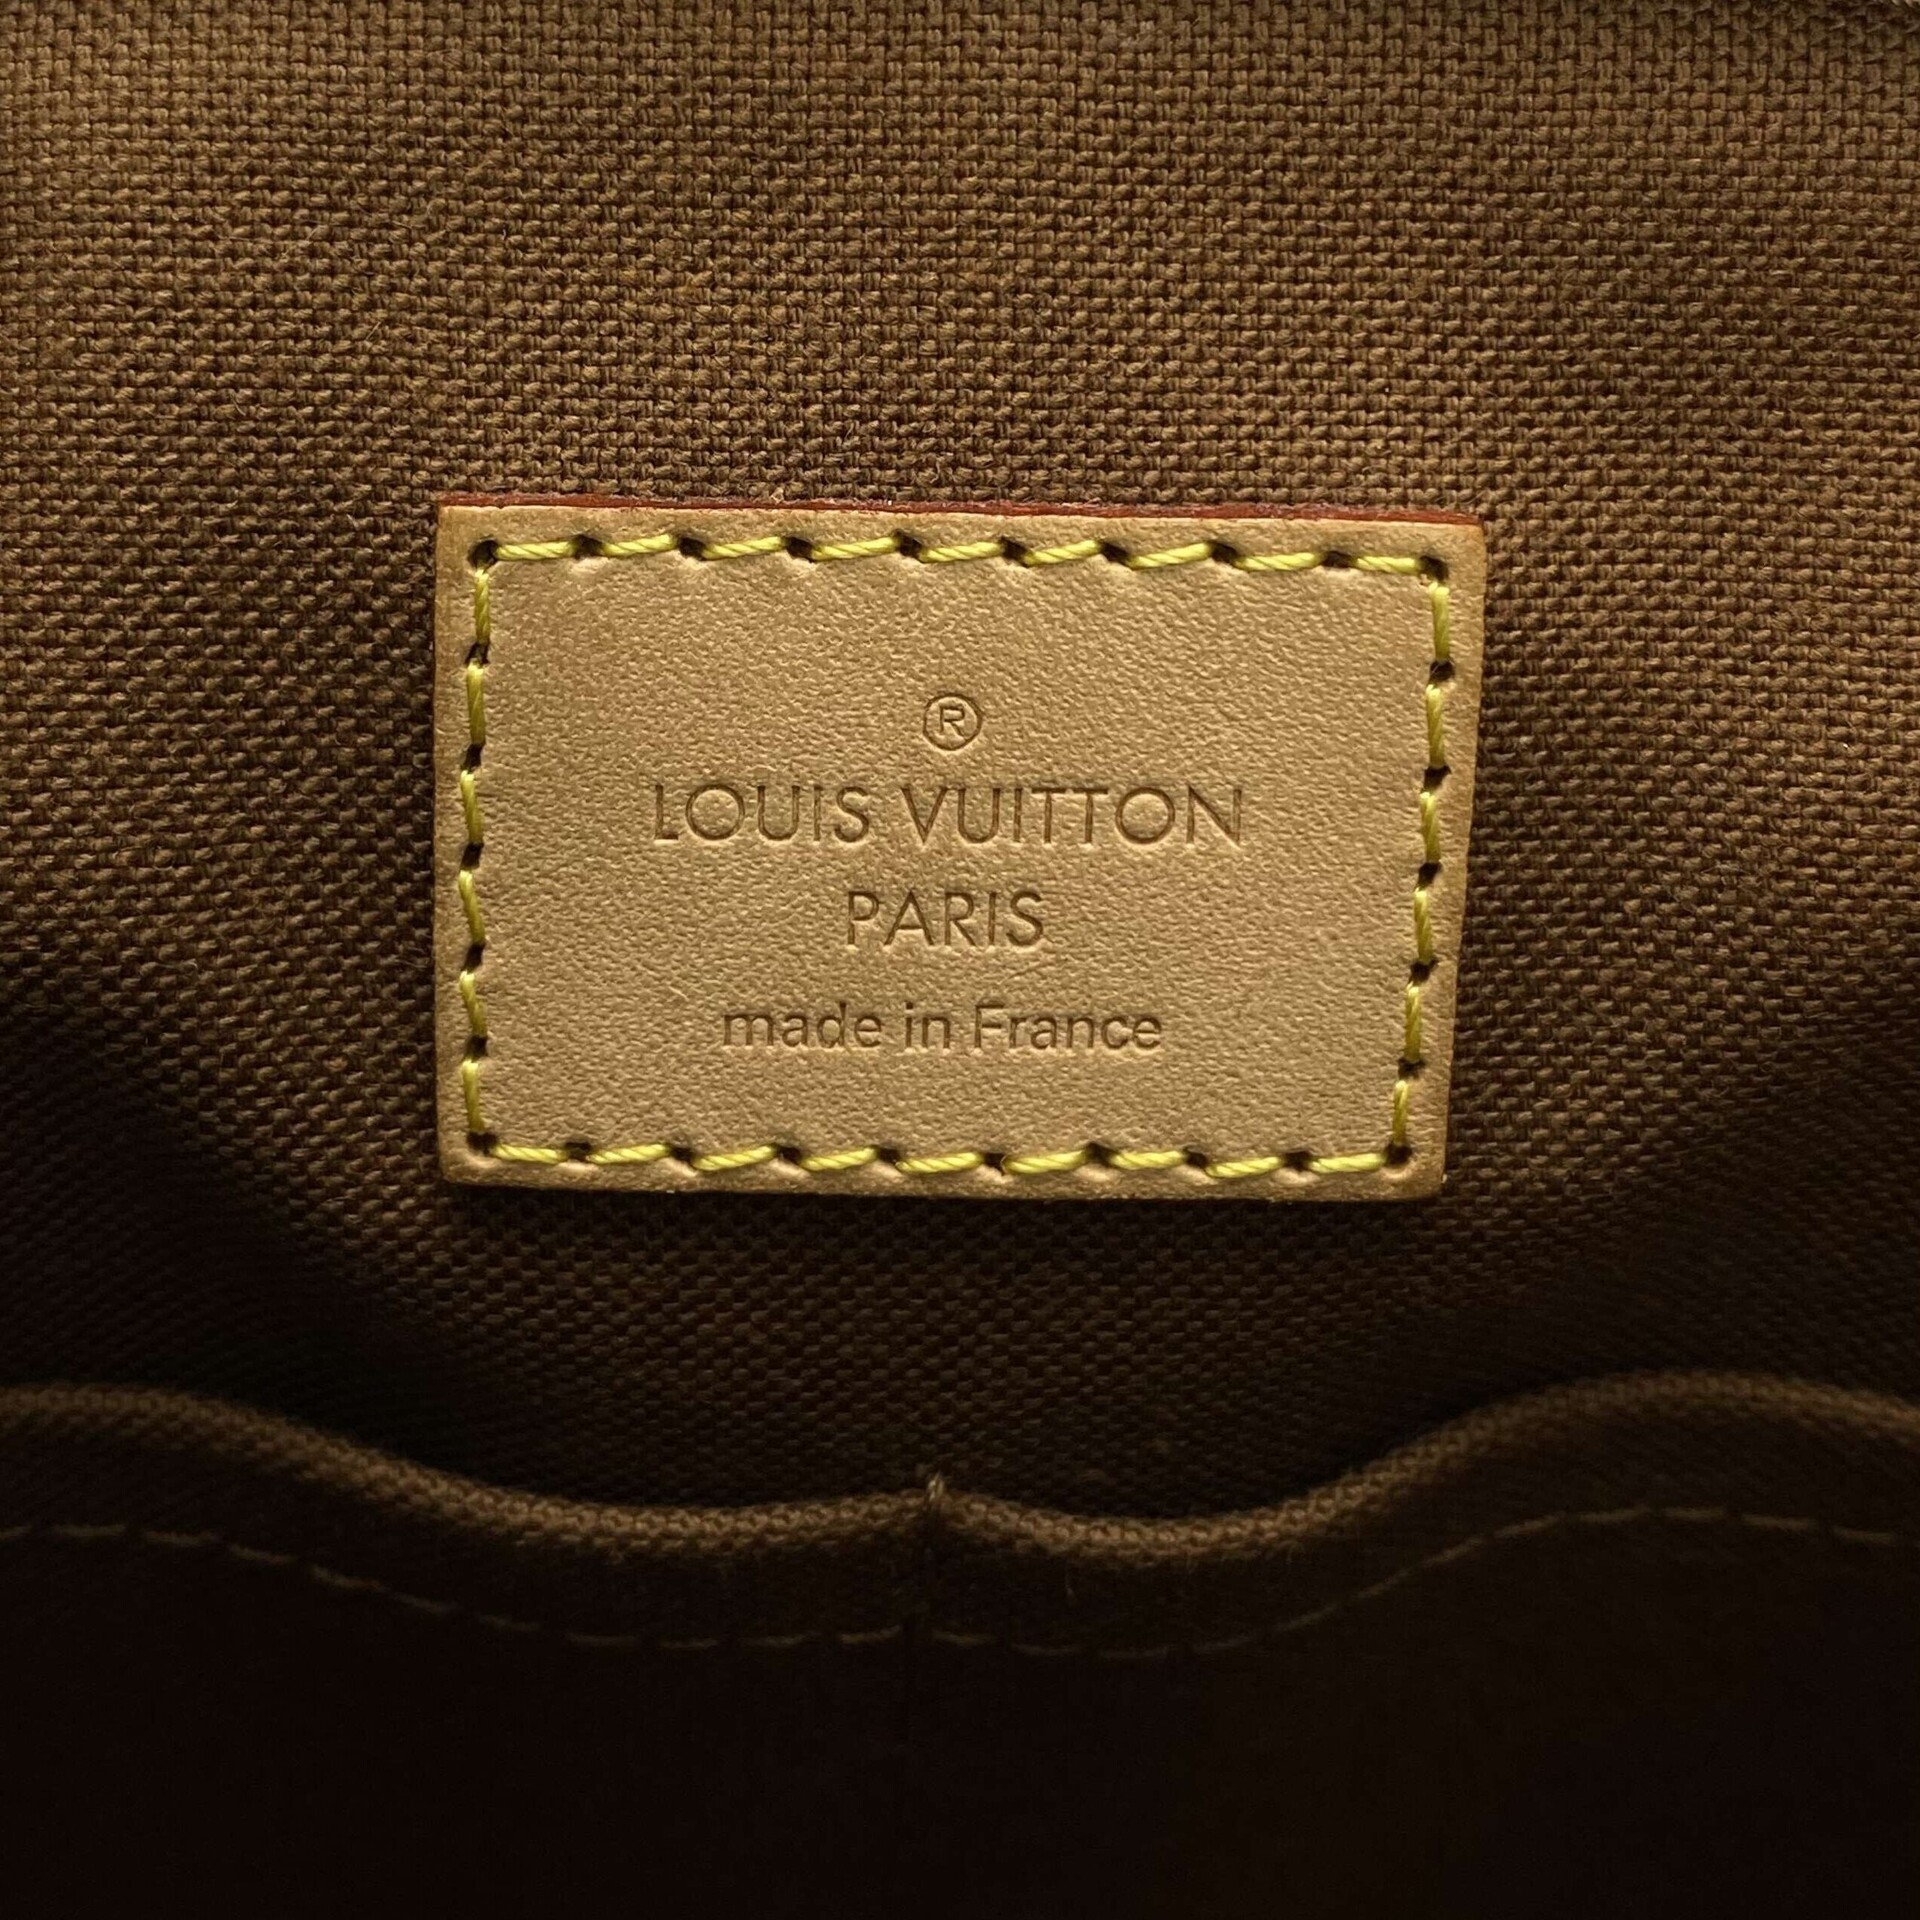 Bolsa Louis Vuitton Tivoli Monogram